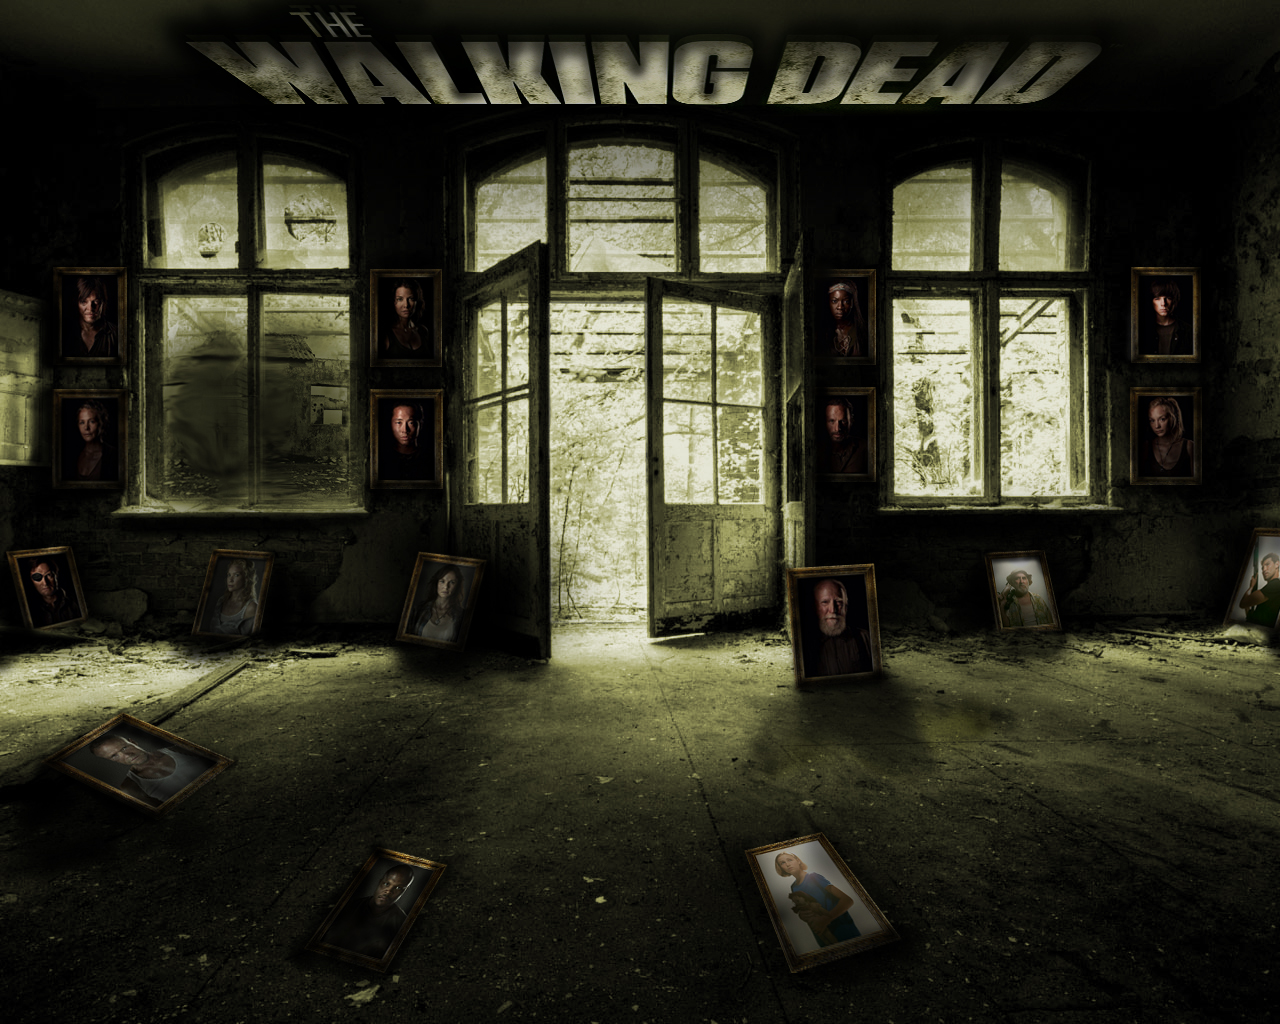 The Walking Dead - Dark Inside Of House - 1280x1024 Wallpaper 